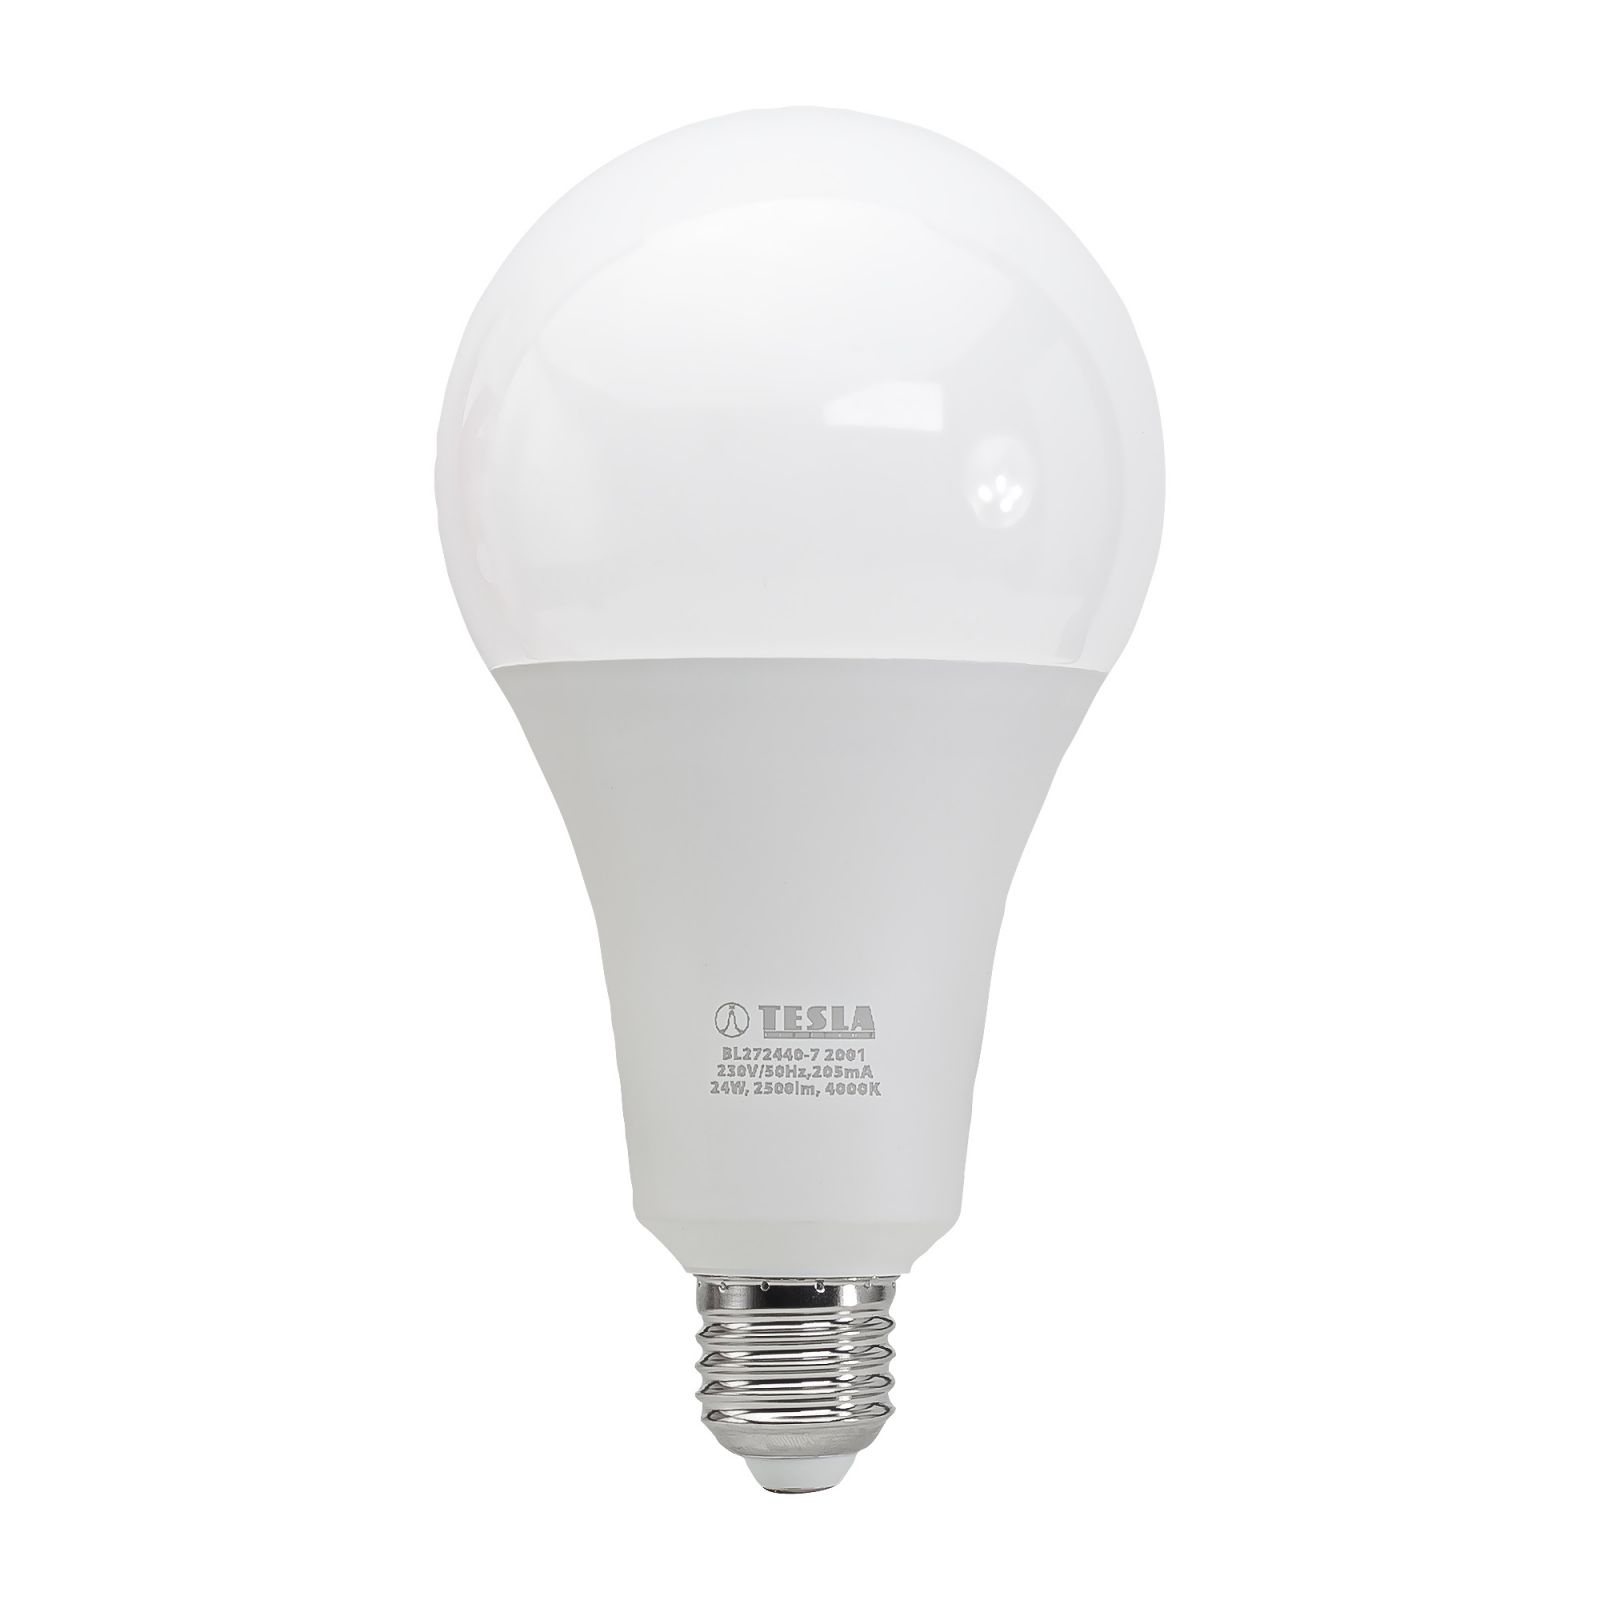 Tesla - LED BULB E27, 24W, 230V, 2500lm, 4000K, 220° Tesla Lighting